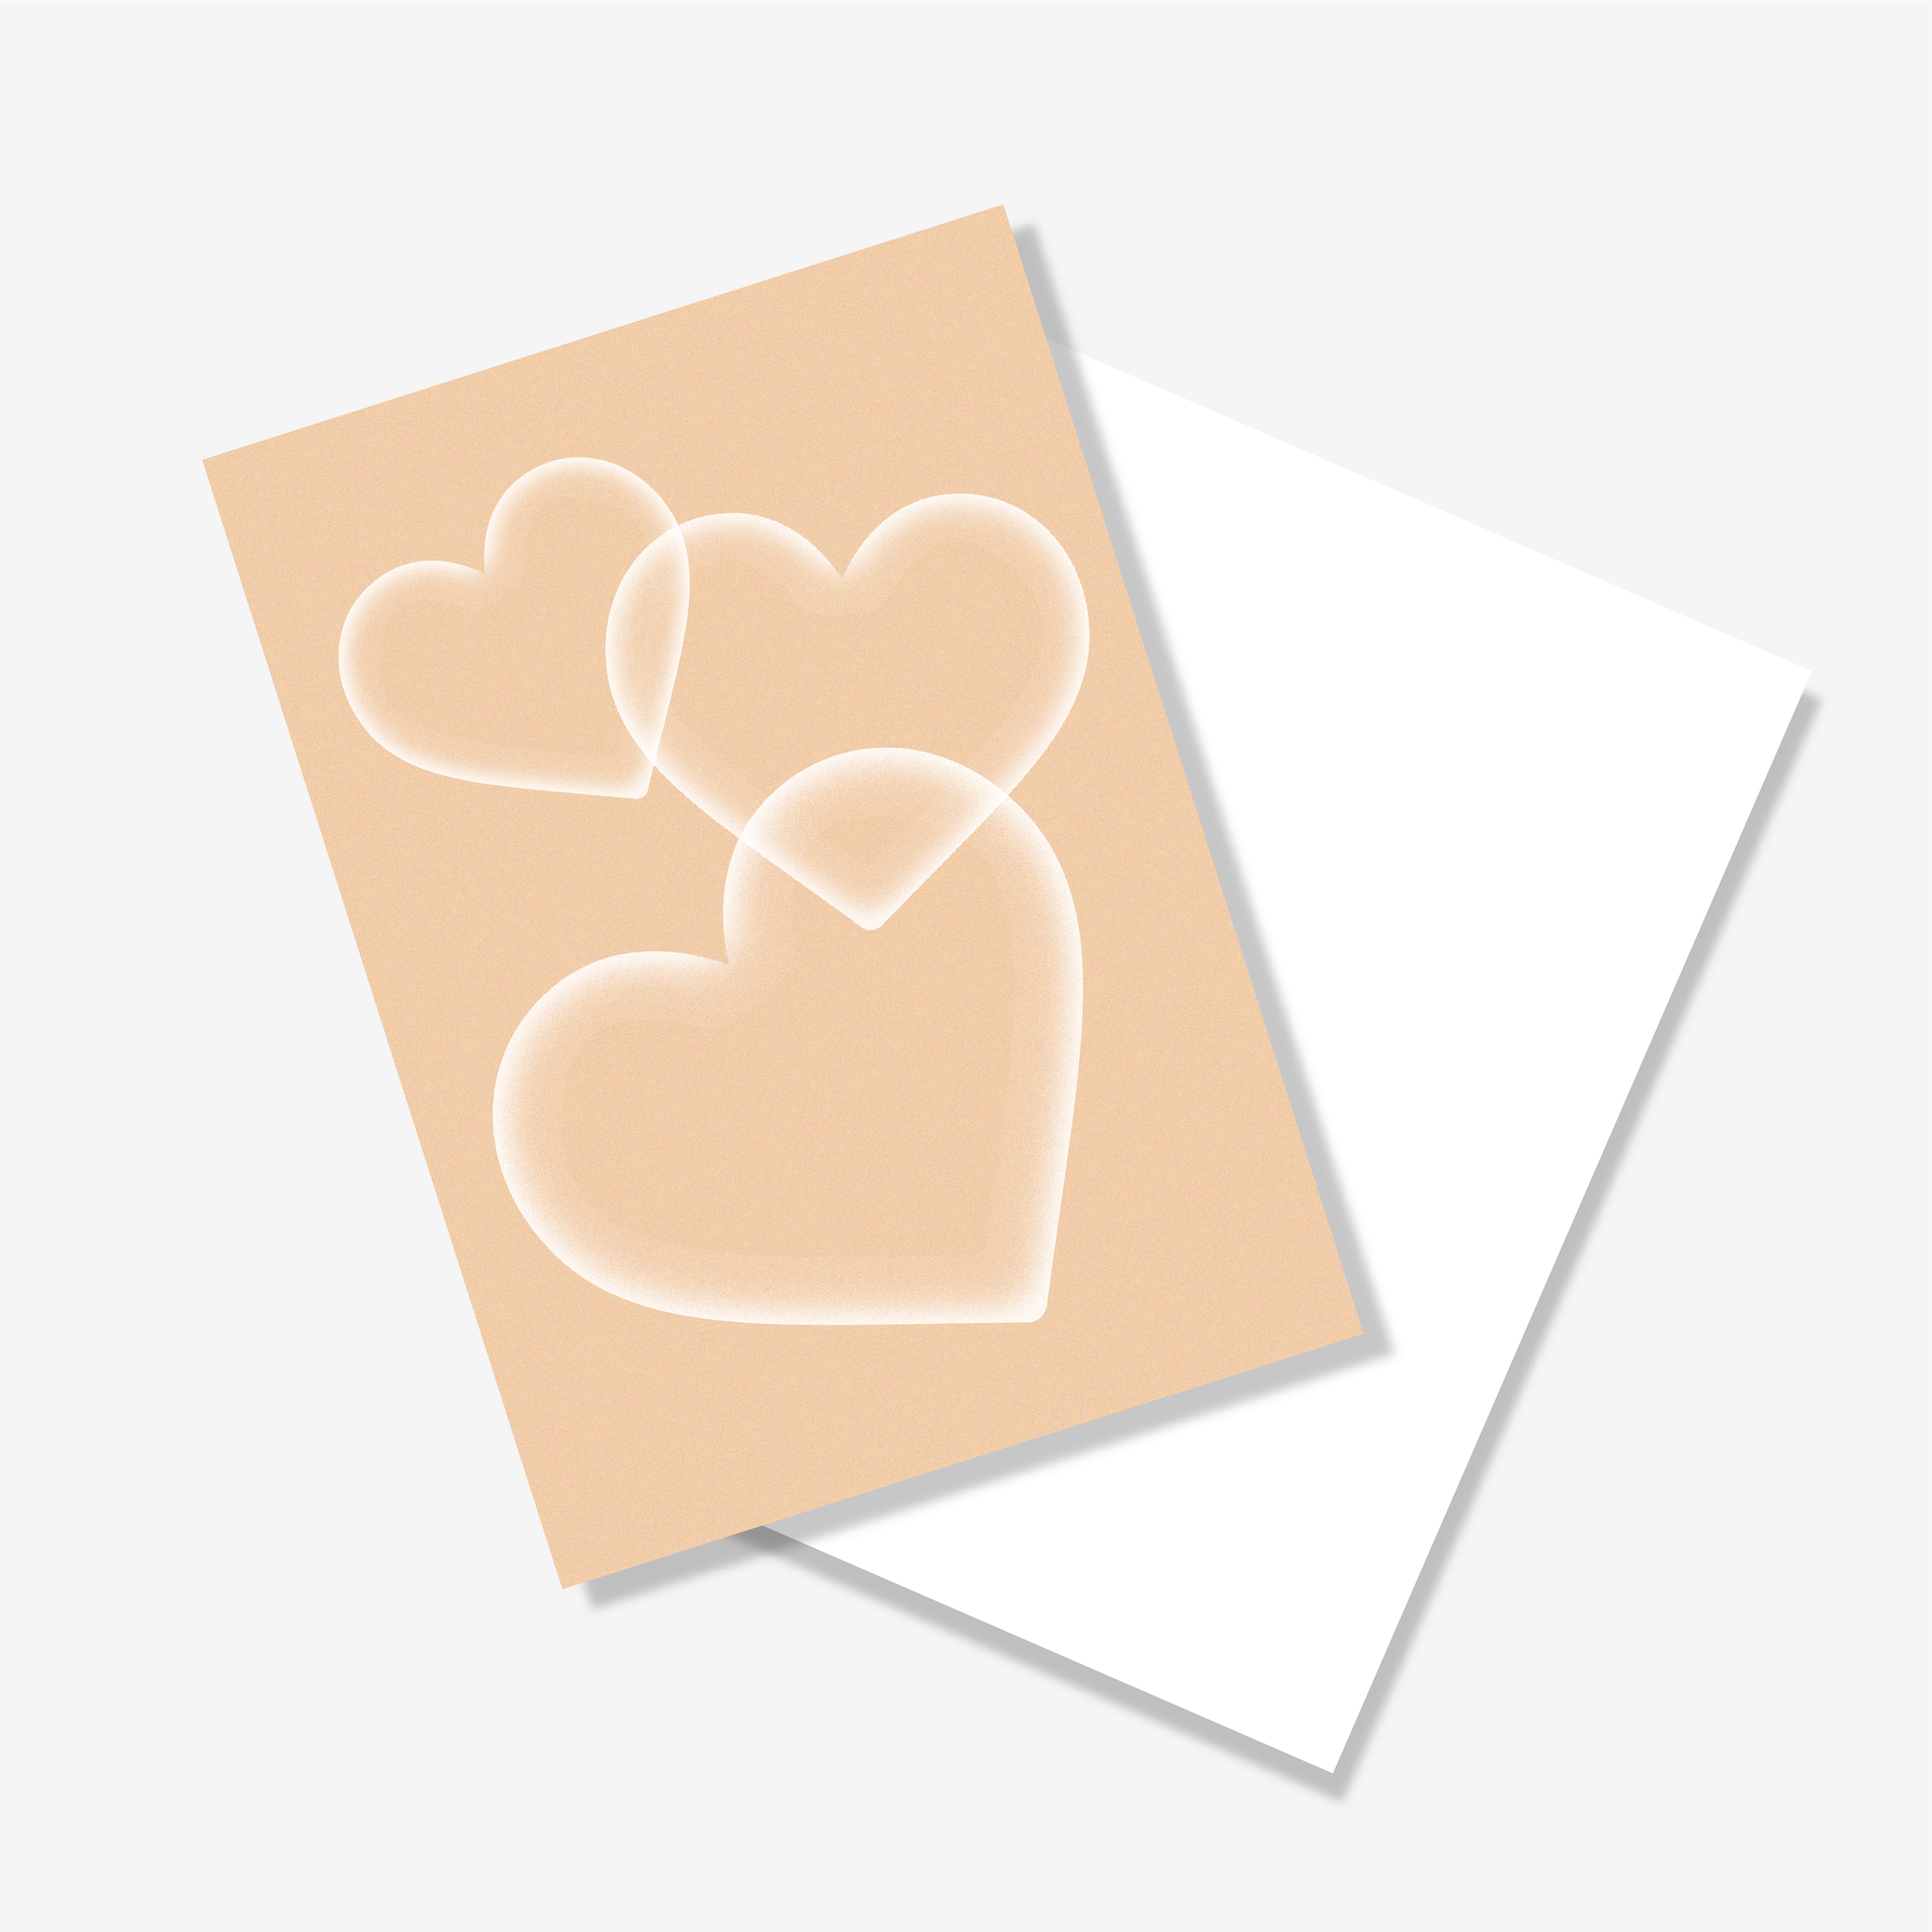 LaFuong Pastry – Thiệp trái tim – Kích thước A6. Để những lời thương yêu được gửi đi.,Không chỉ đơn thuần là tặng một chiếc bánh, LaFuong hiểu rằng mỗi món quà trao đi sẽ luôn đi cùng với những thông điệp quan trọng. Nếu bạn muốn gửi thiệp kèm bánh và không tiện tự viết tay, LaFuong sẽ giúp bạn in những điều bạn muốn gửi gắm lên thiệp hoàn toàn miễn phí.,P/s: Điền nội dung bạn muốn in lên thiệp ở phần giỏ hàng nhé!